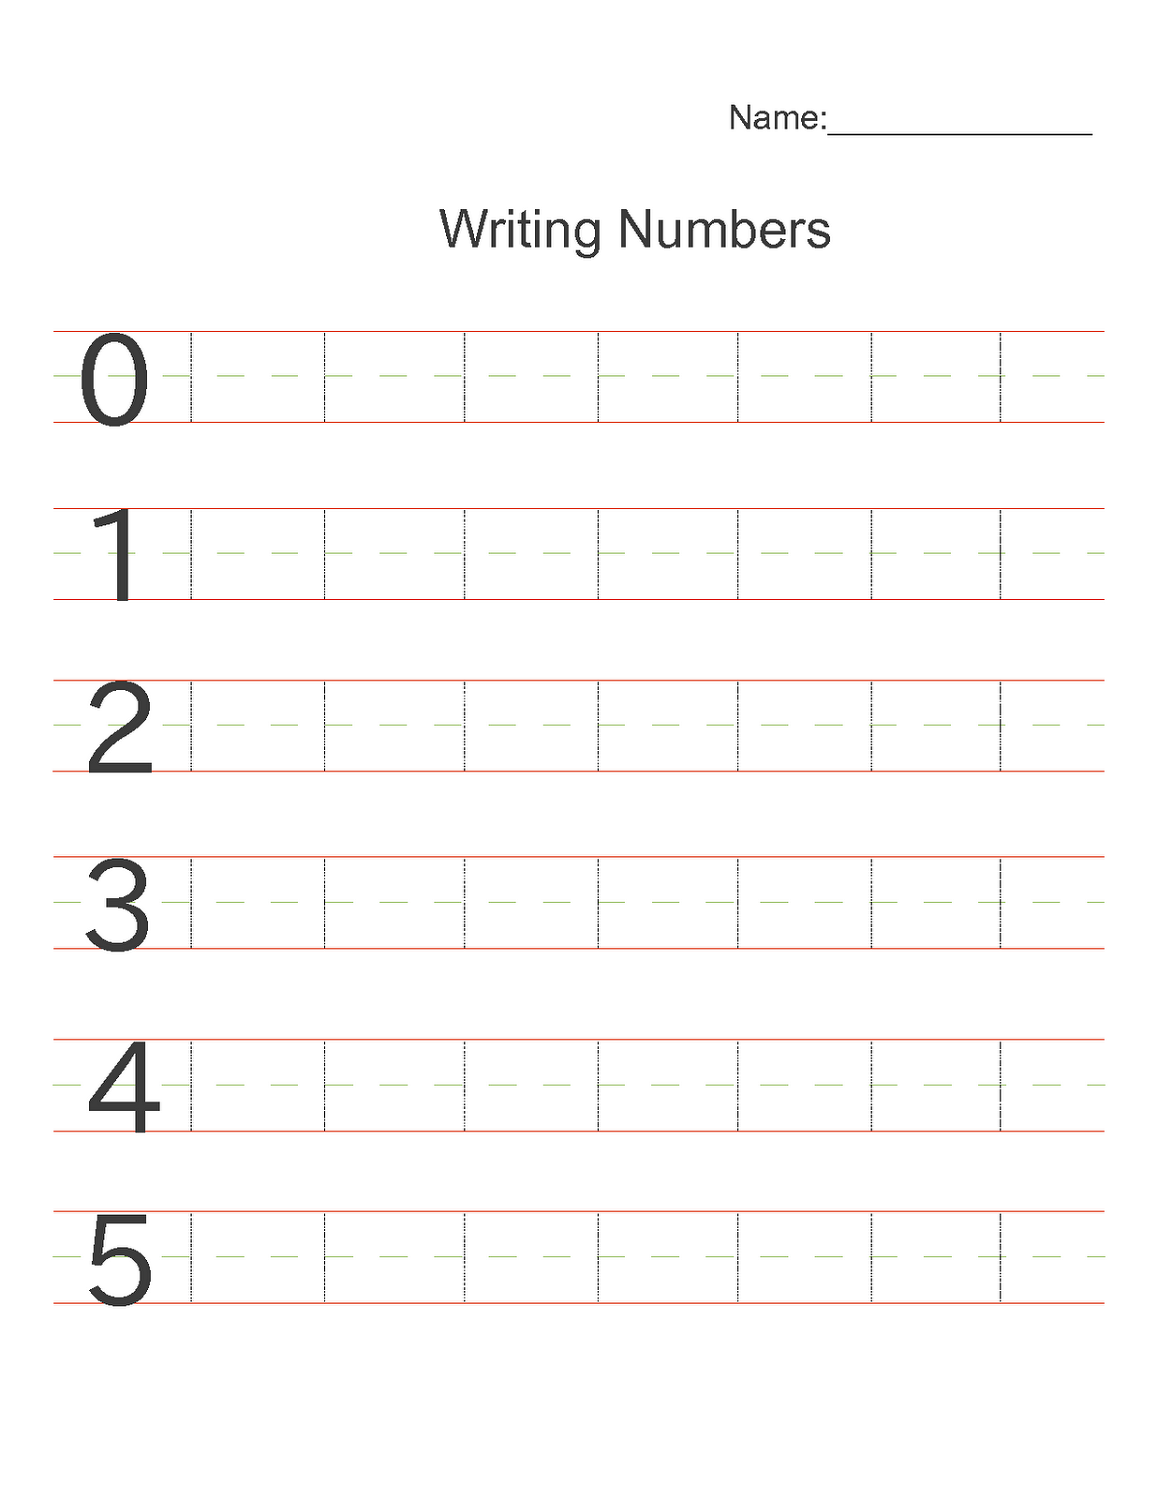 practice-writing-numbers-worksheet